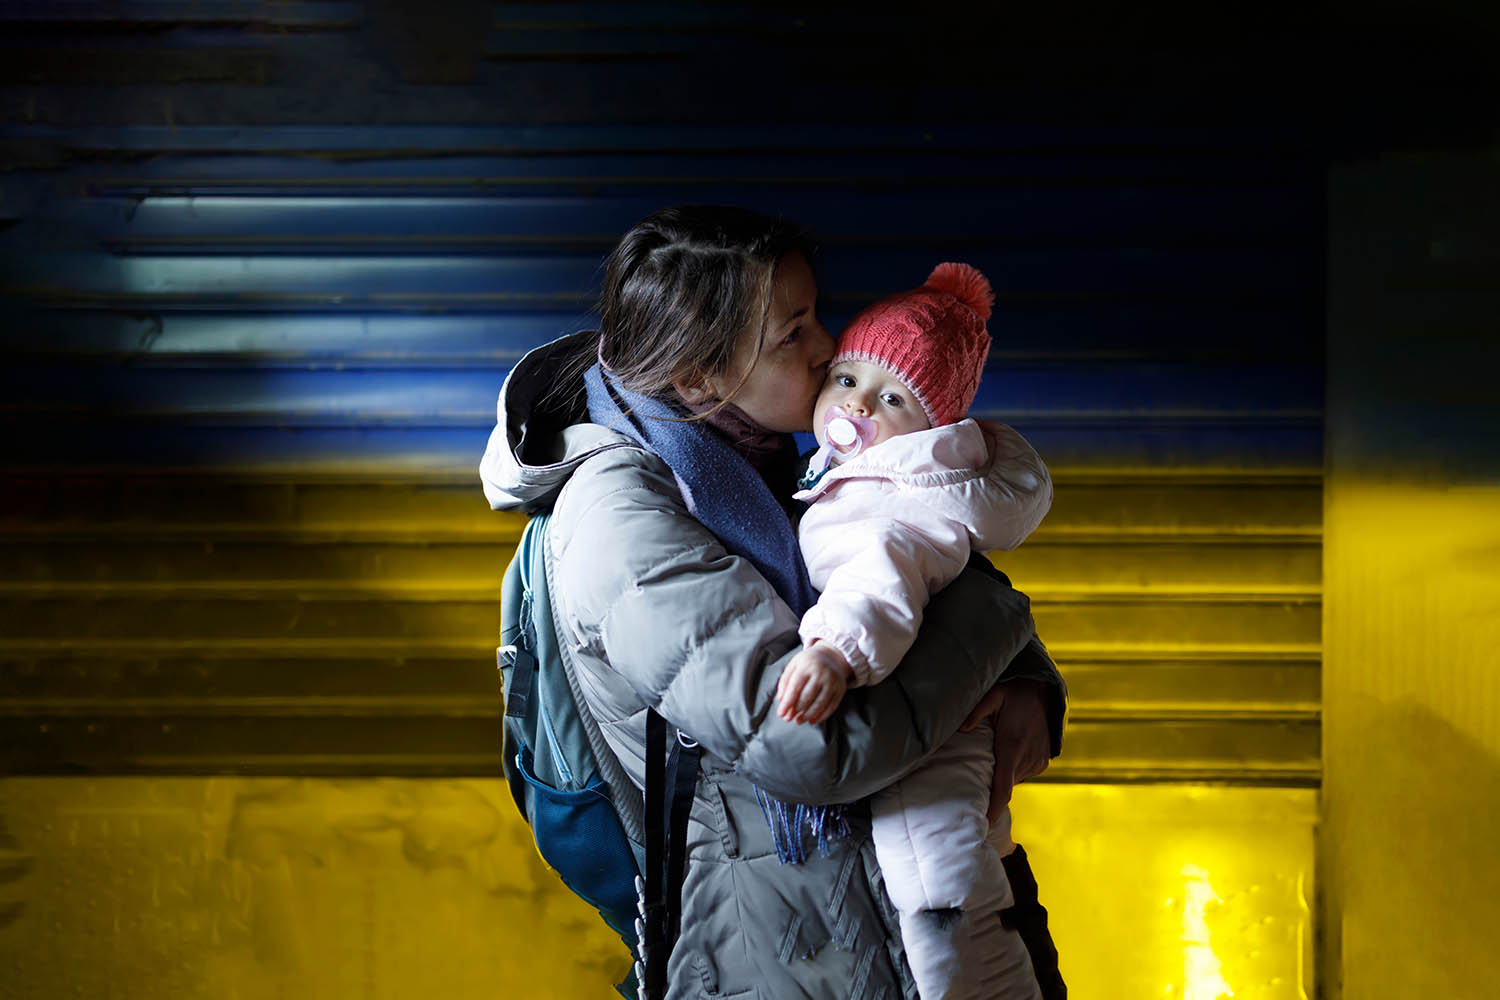 Um die medizinische Versorgung der Geflüchteten aus der Ukraine schnellstmöglich sicherzustellen, gilt das Asylbewerberleistungsgesetz. Corona-Testungen oder Impfungen werden genauso wie bei Menschen hierzulande  abgerechnet. 